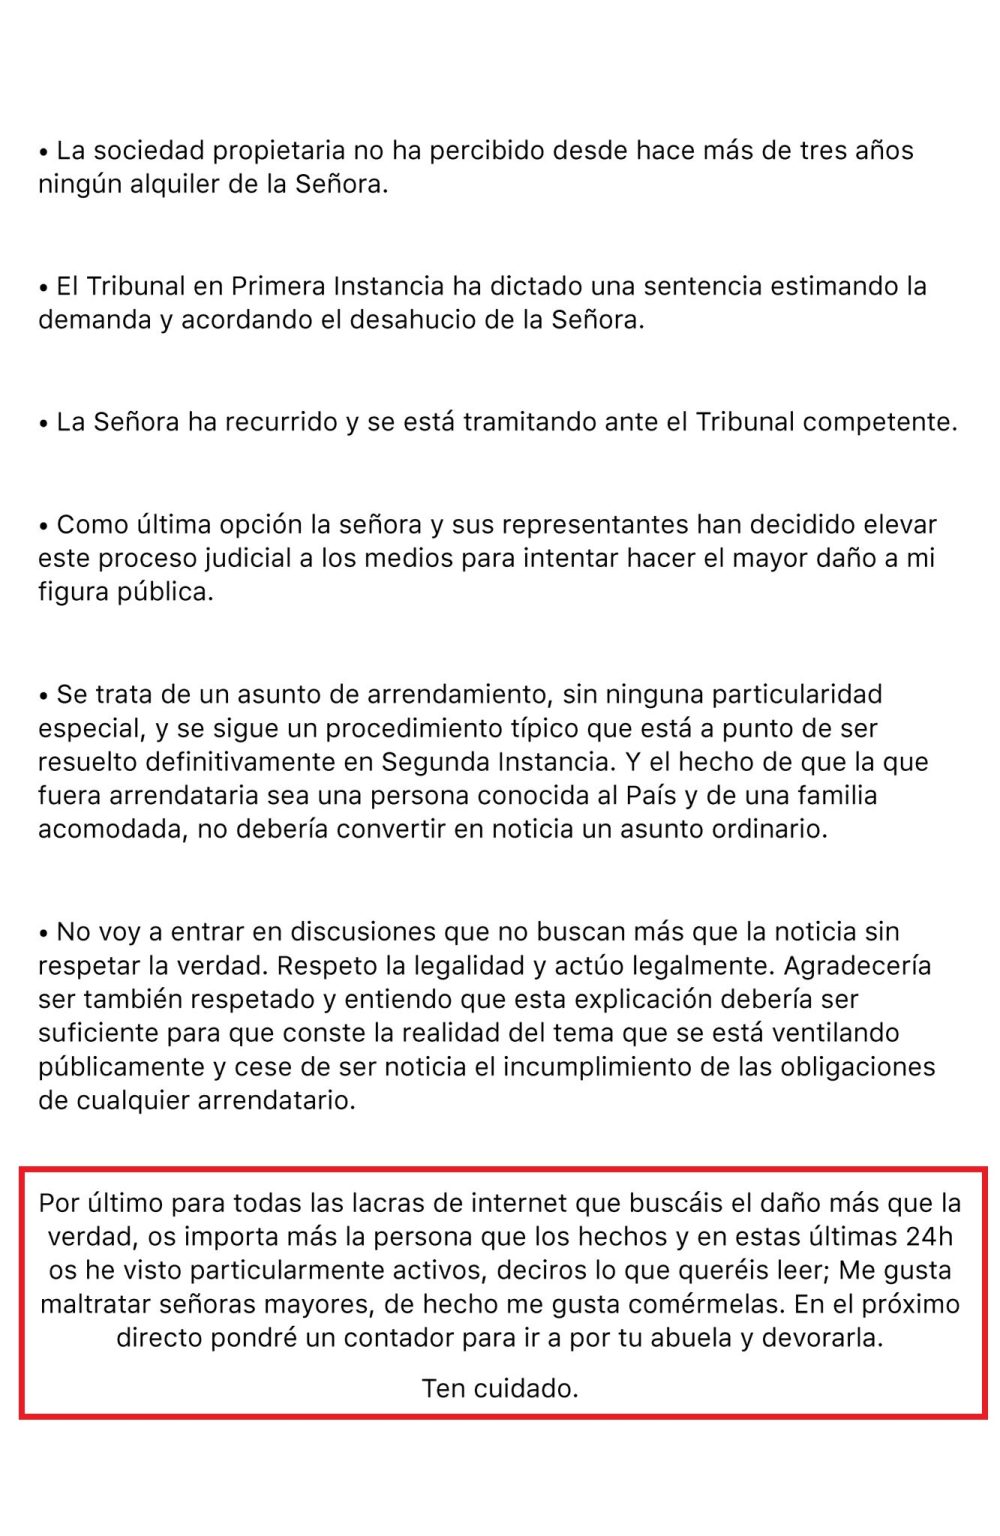 Vaya, qué casualidad... al enemigo nº1 del Gobierno en Internet, al mismísimo anticristo fiscal, le han dedicado una noticia infernal en Lo País...